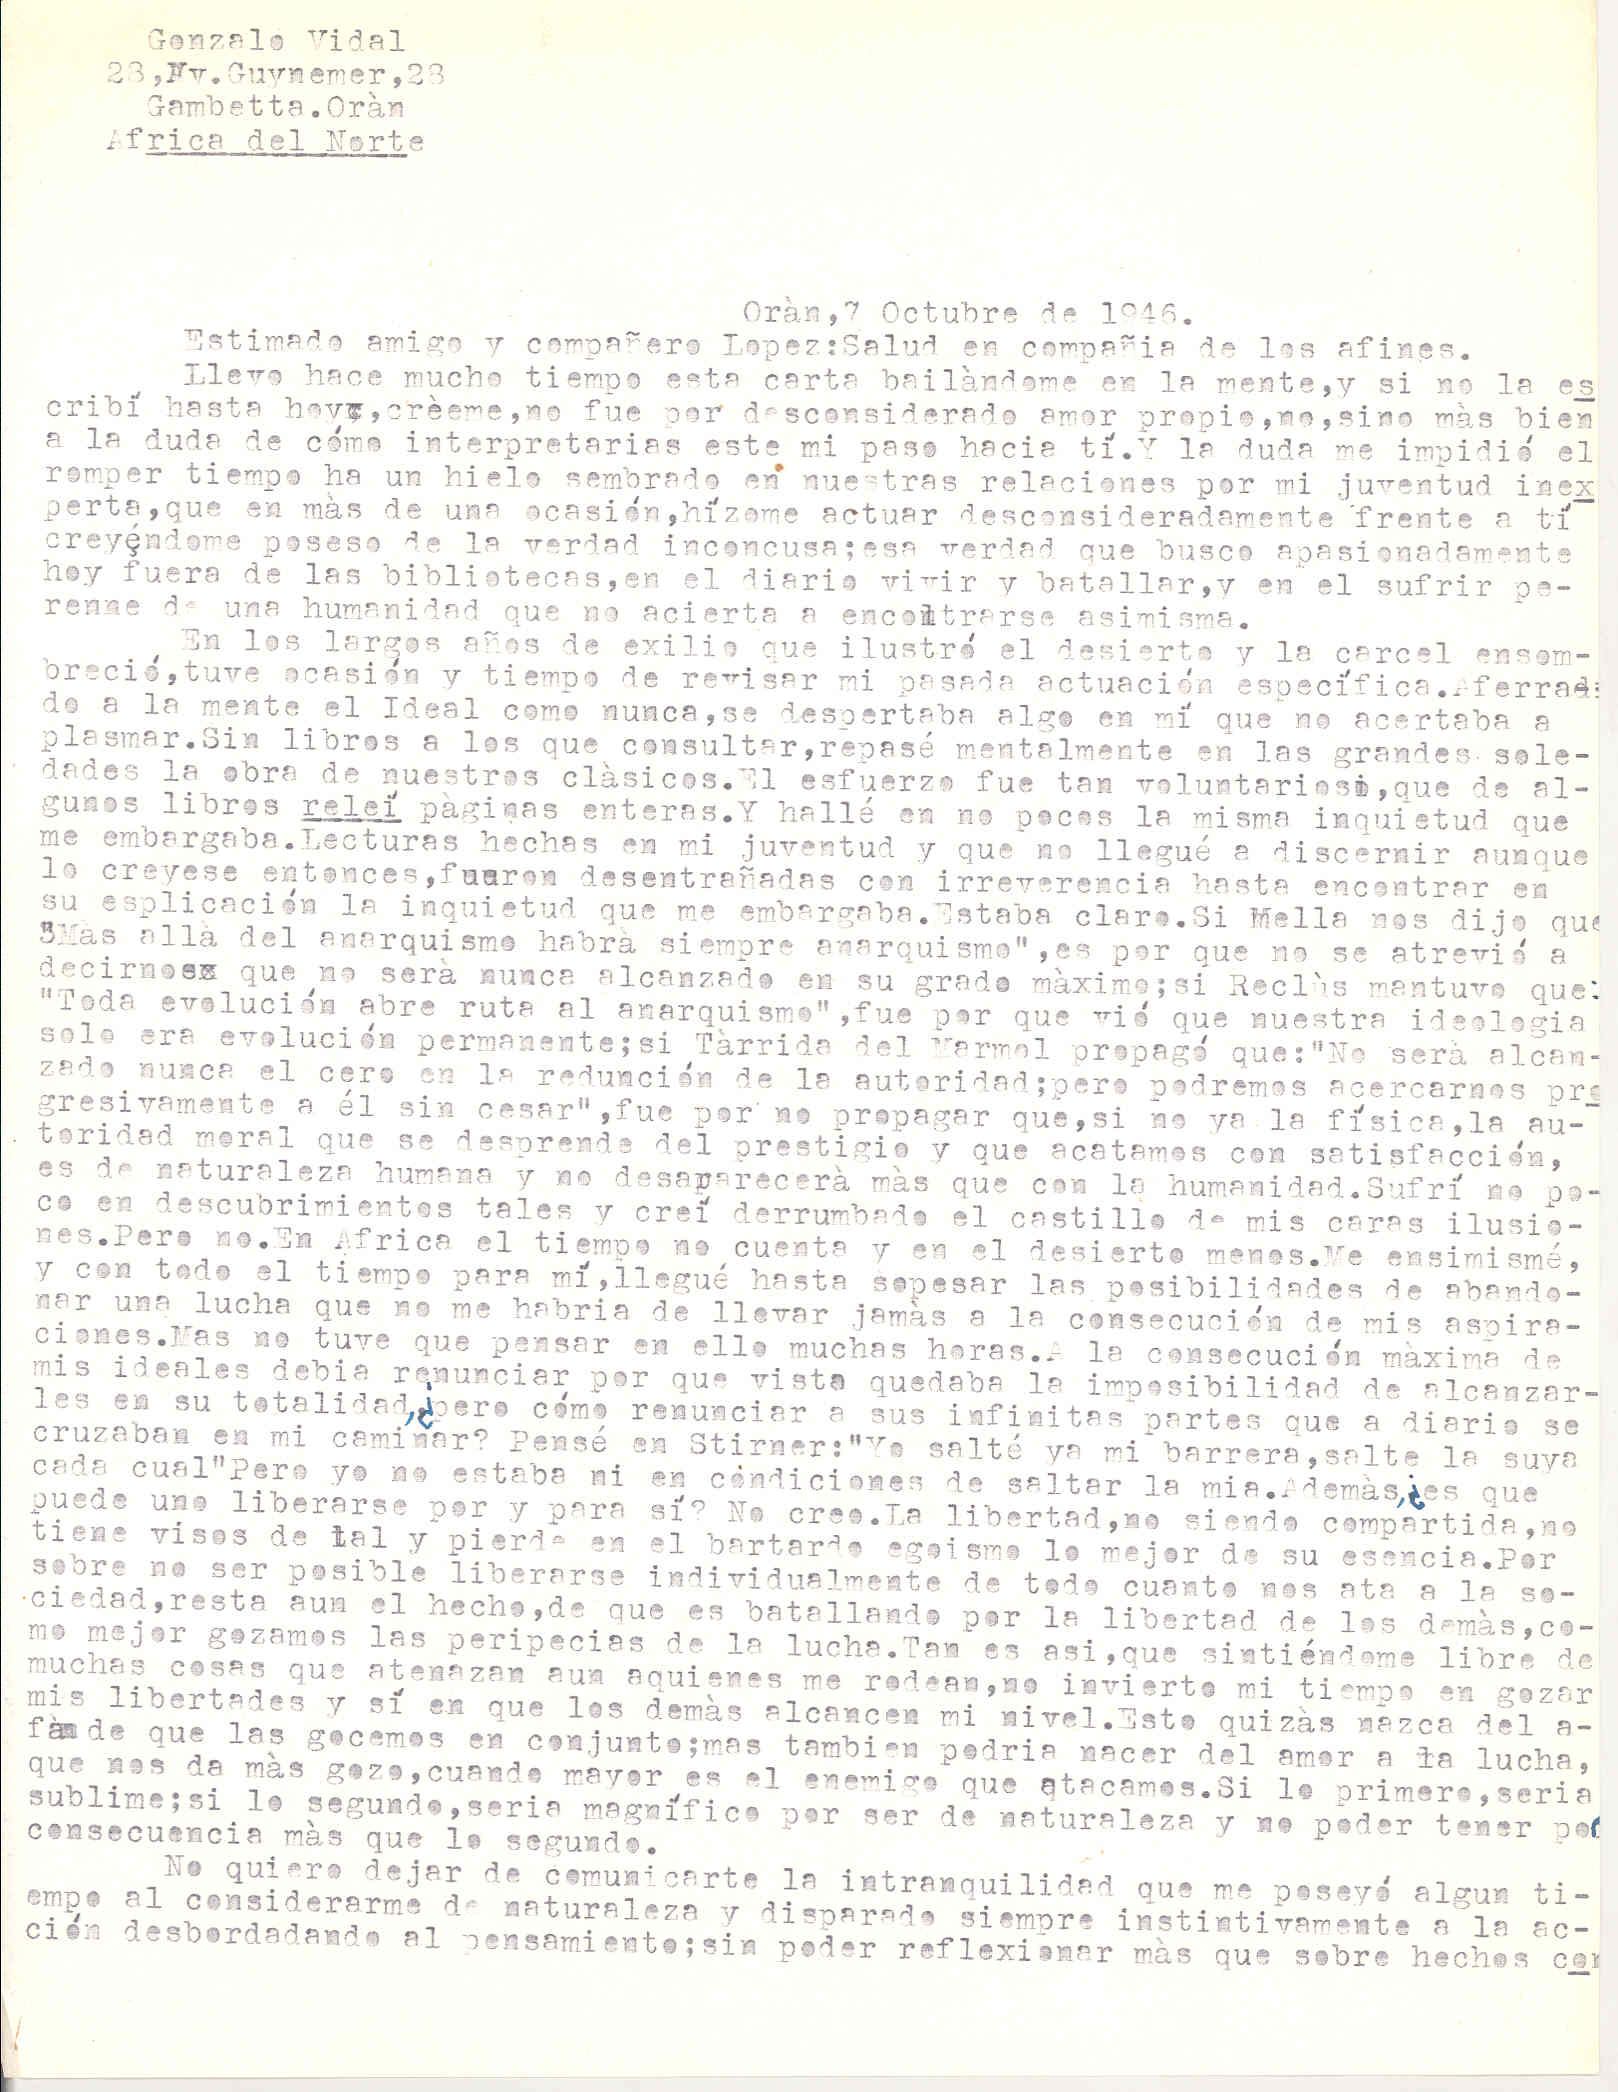 Carta de Gonzalo Vidal en la que expone algunas de sus meditaciones sobre la lucha por el anarquismo, durante su estancia en prisión.